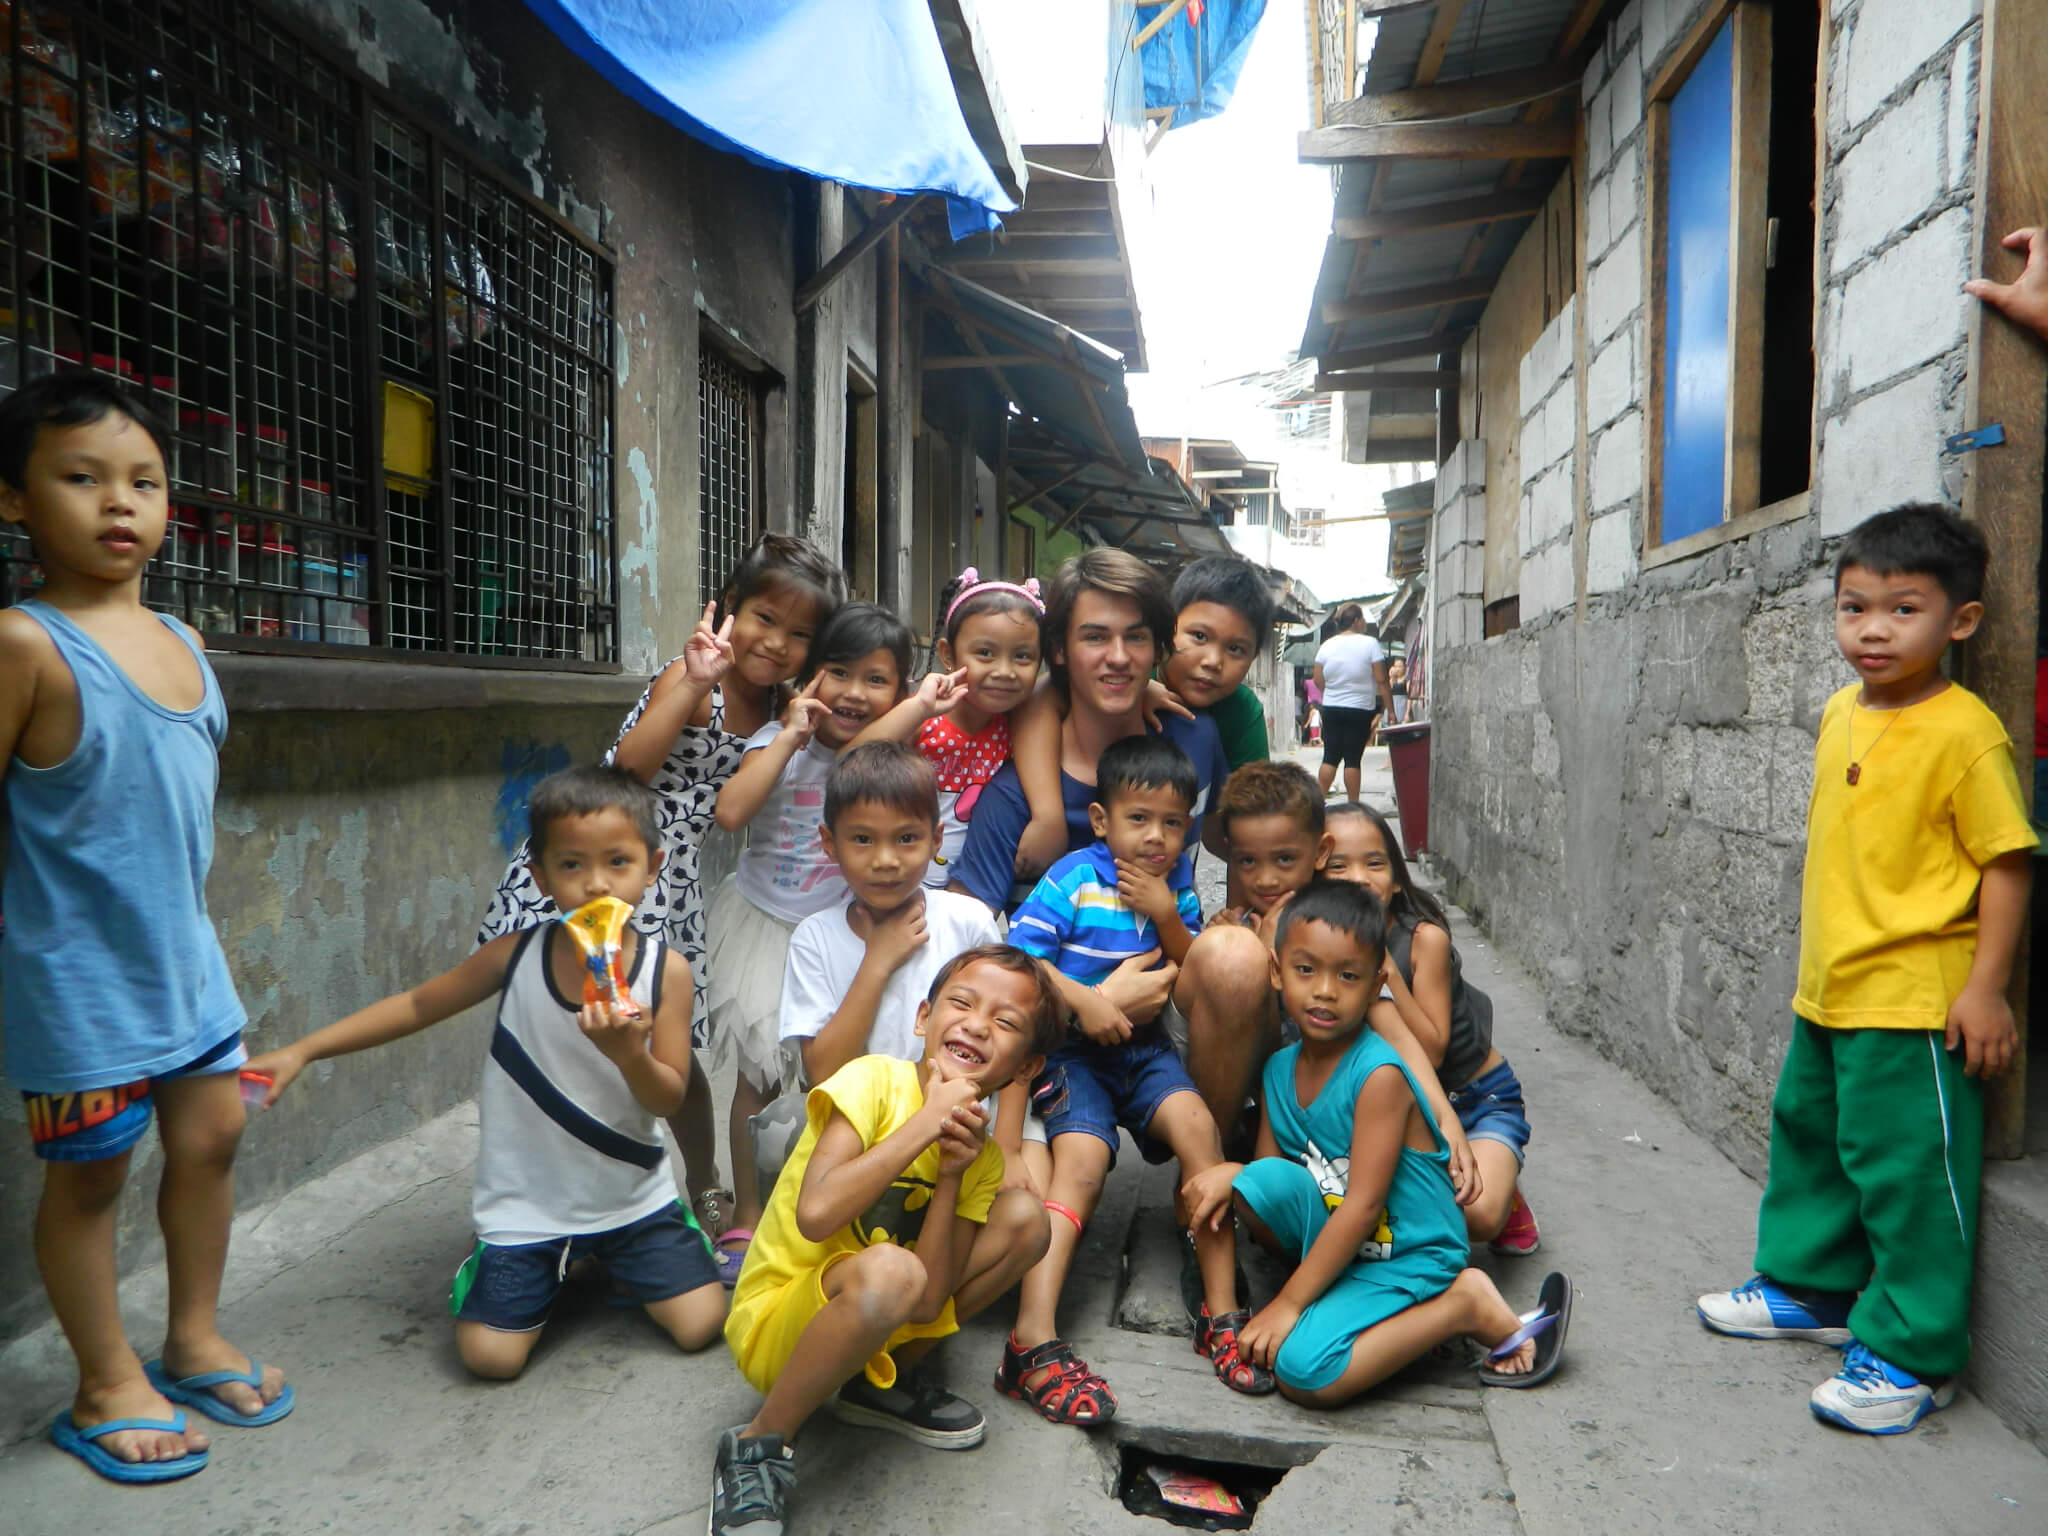 Bild: Kinder und Freiwilliger in einer engen Gasse